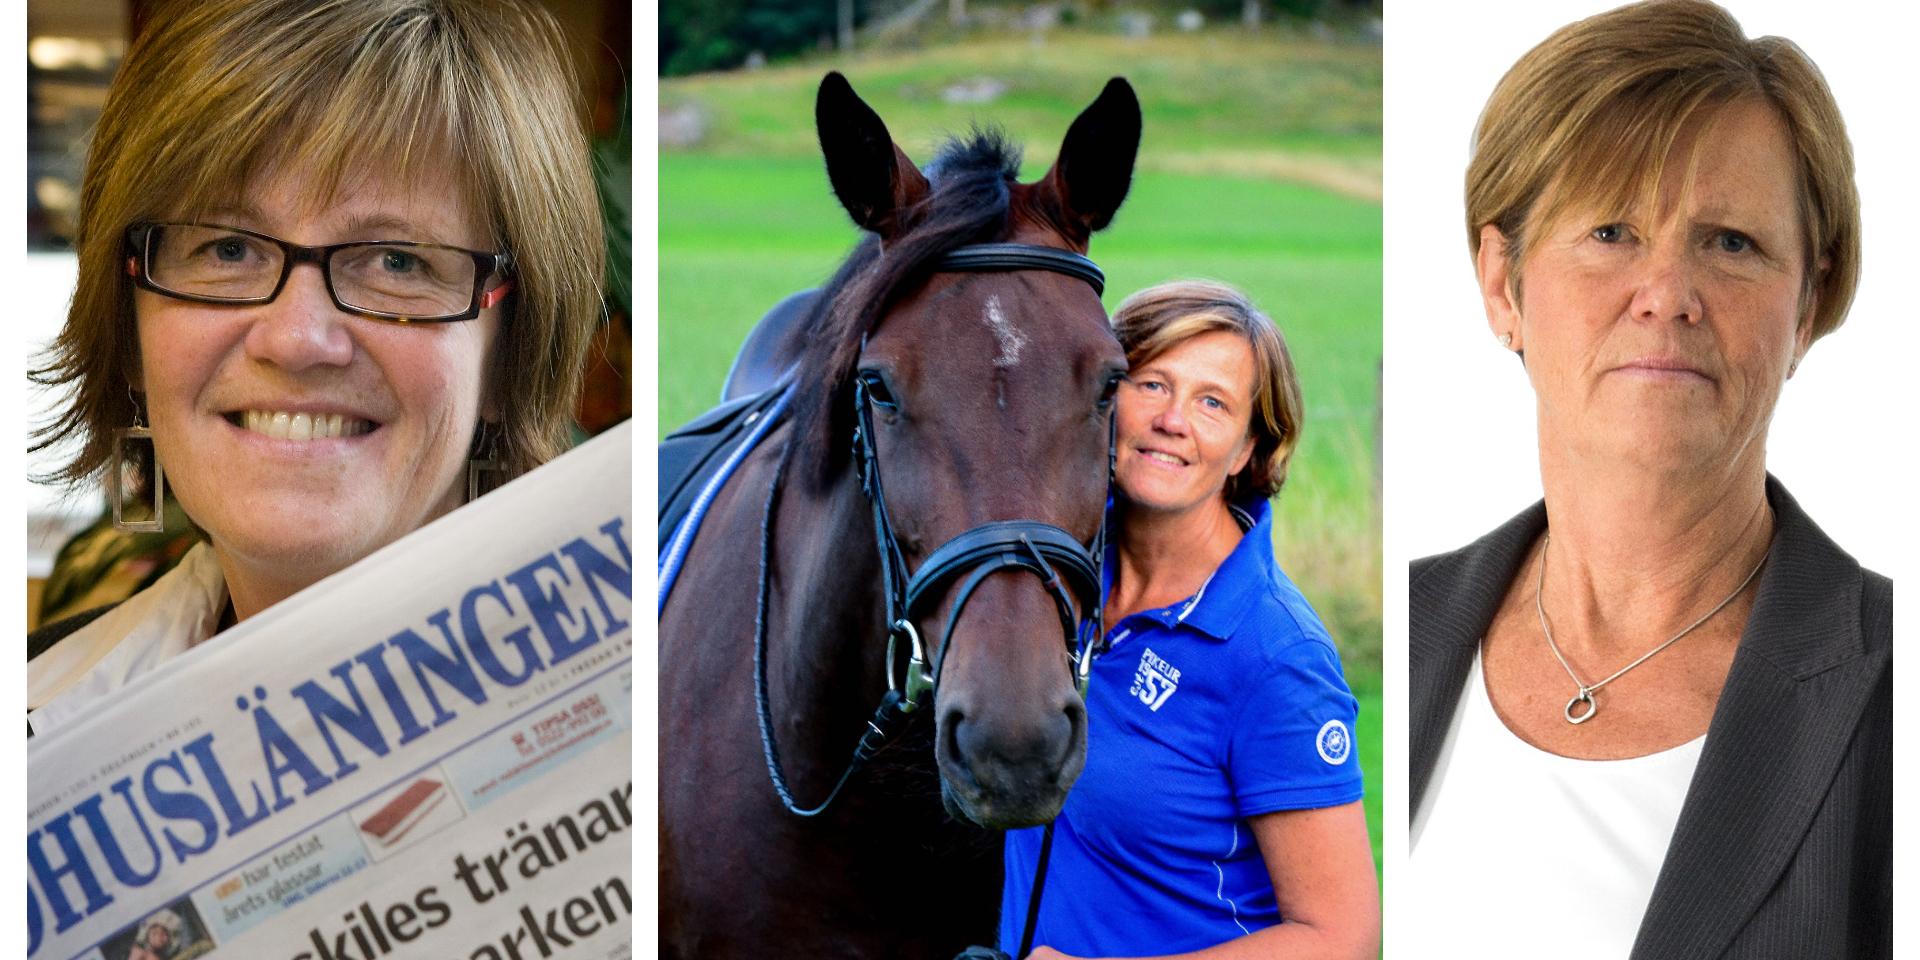 Till vänster: Ingalill Sundhage år 2009 när hon presenterades som ny chefredaktör, i mitten: år 2014 med häst, till höger: idag. 